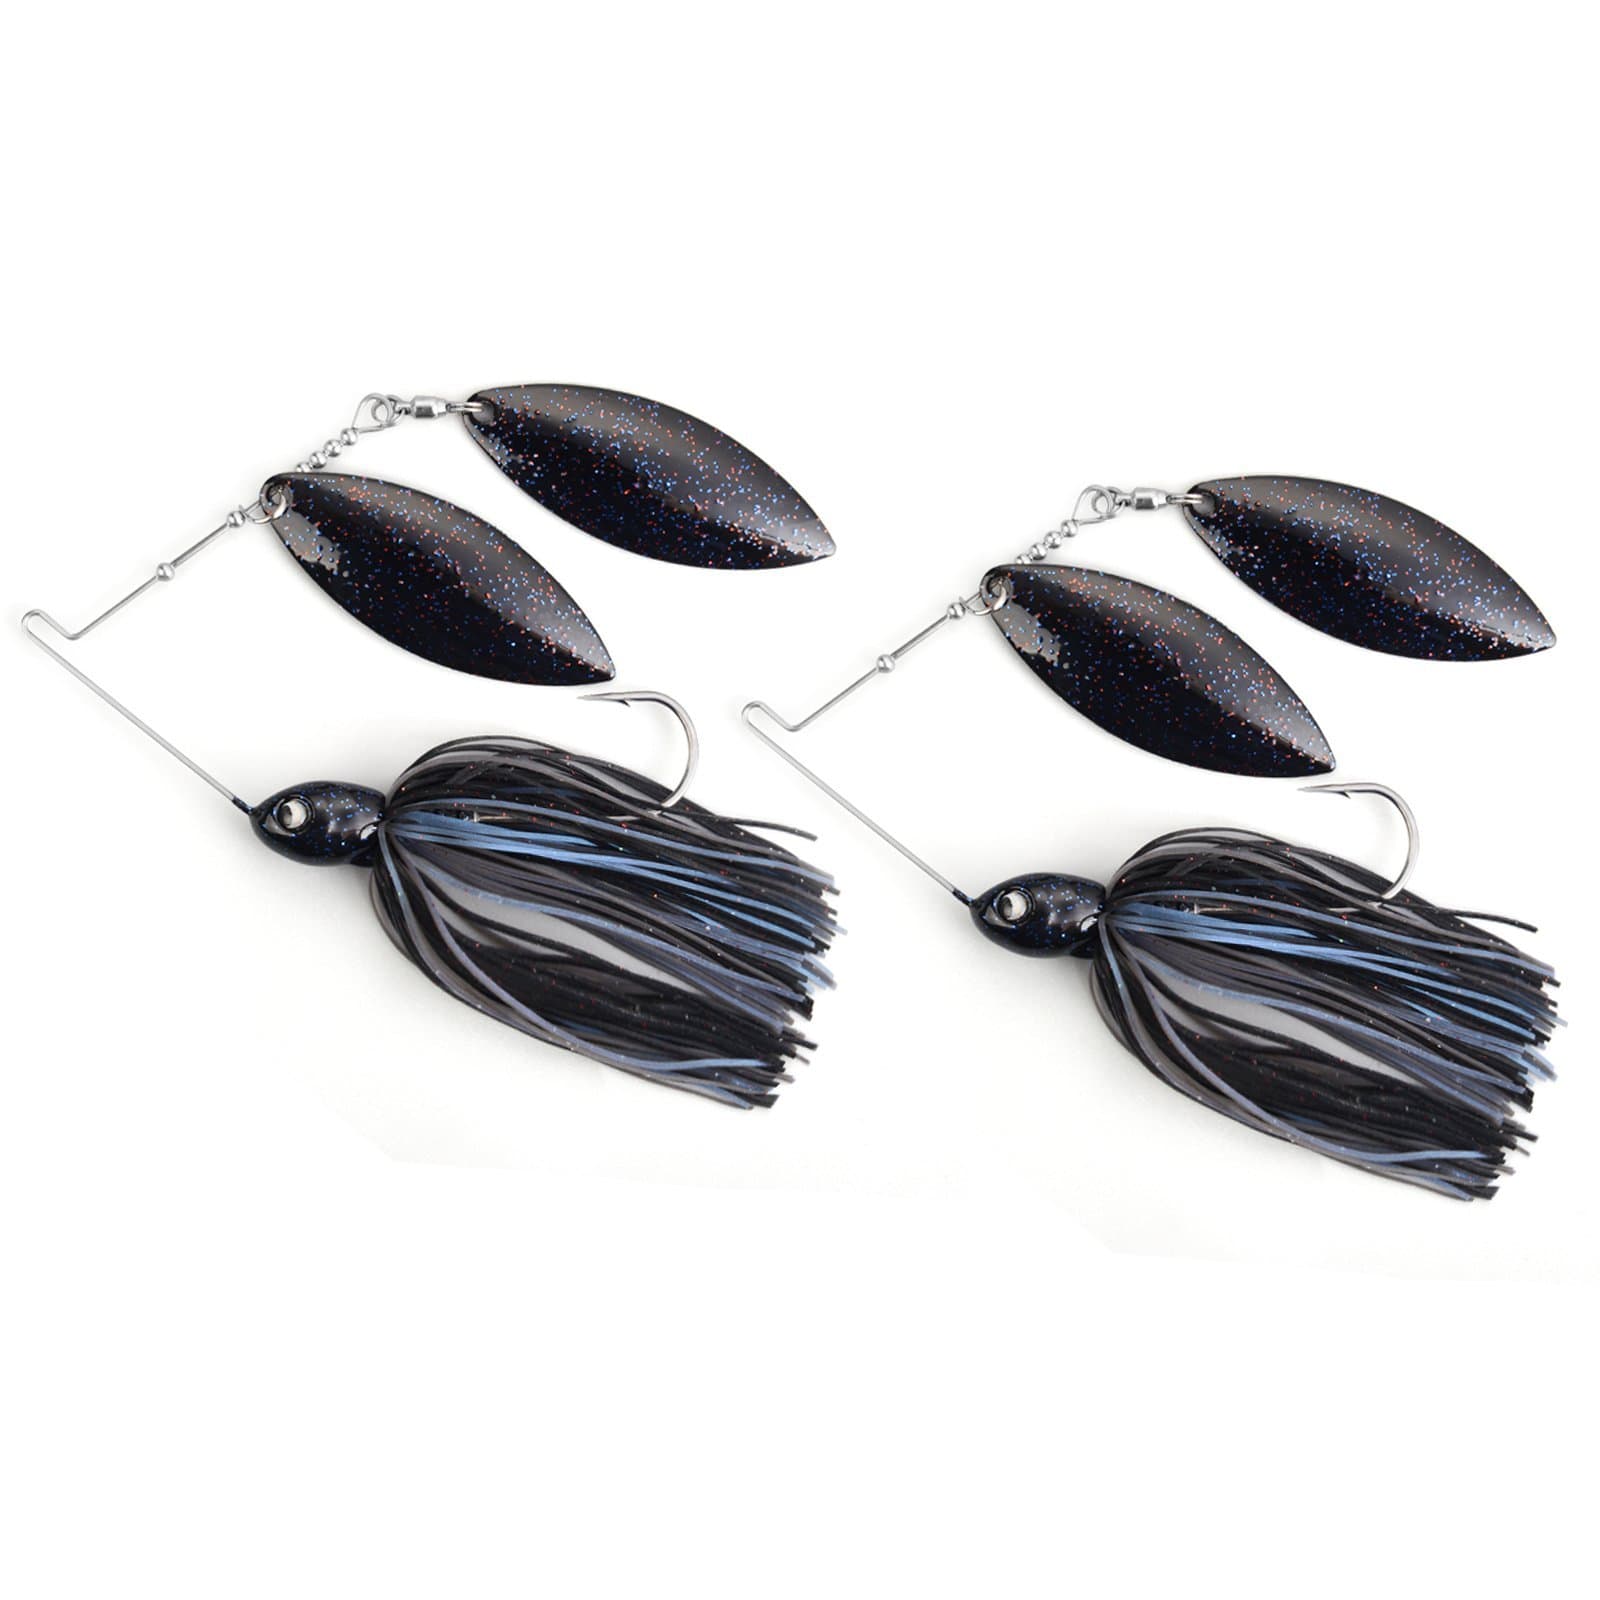 MadBite Spinnerbait Fishing Lures - 3/8 / Blue Black / 2